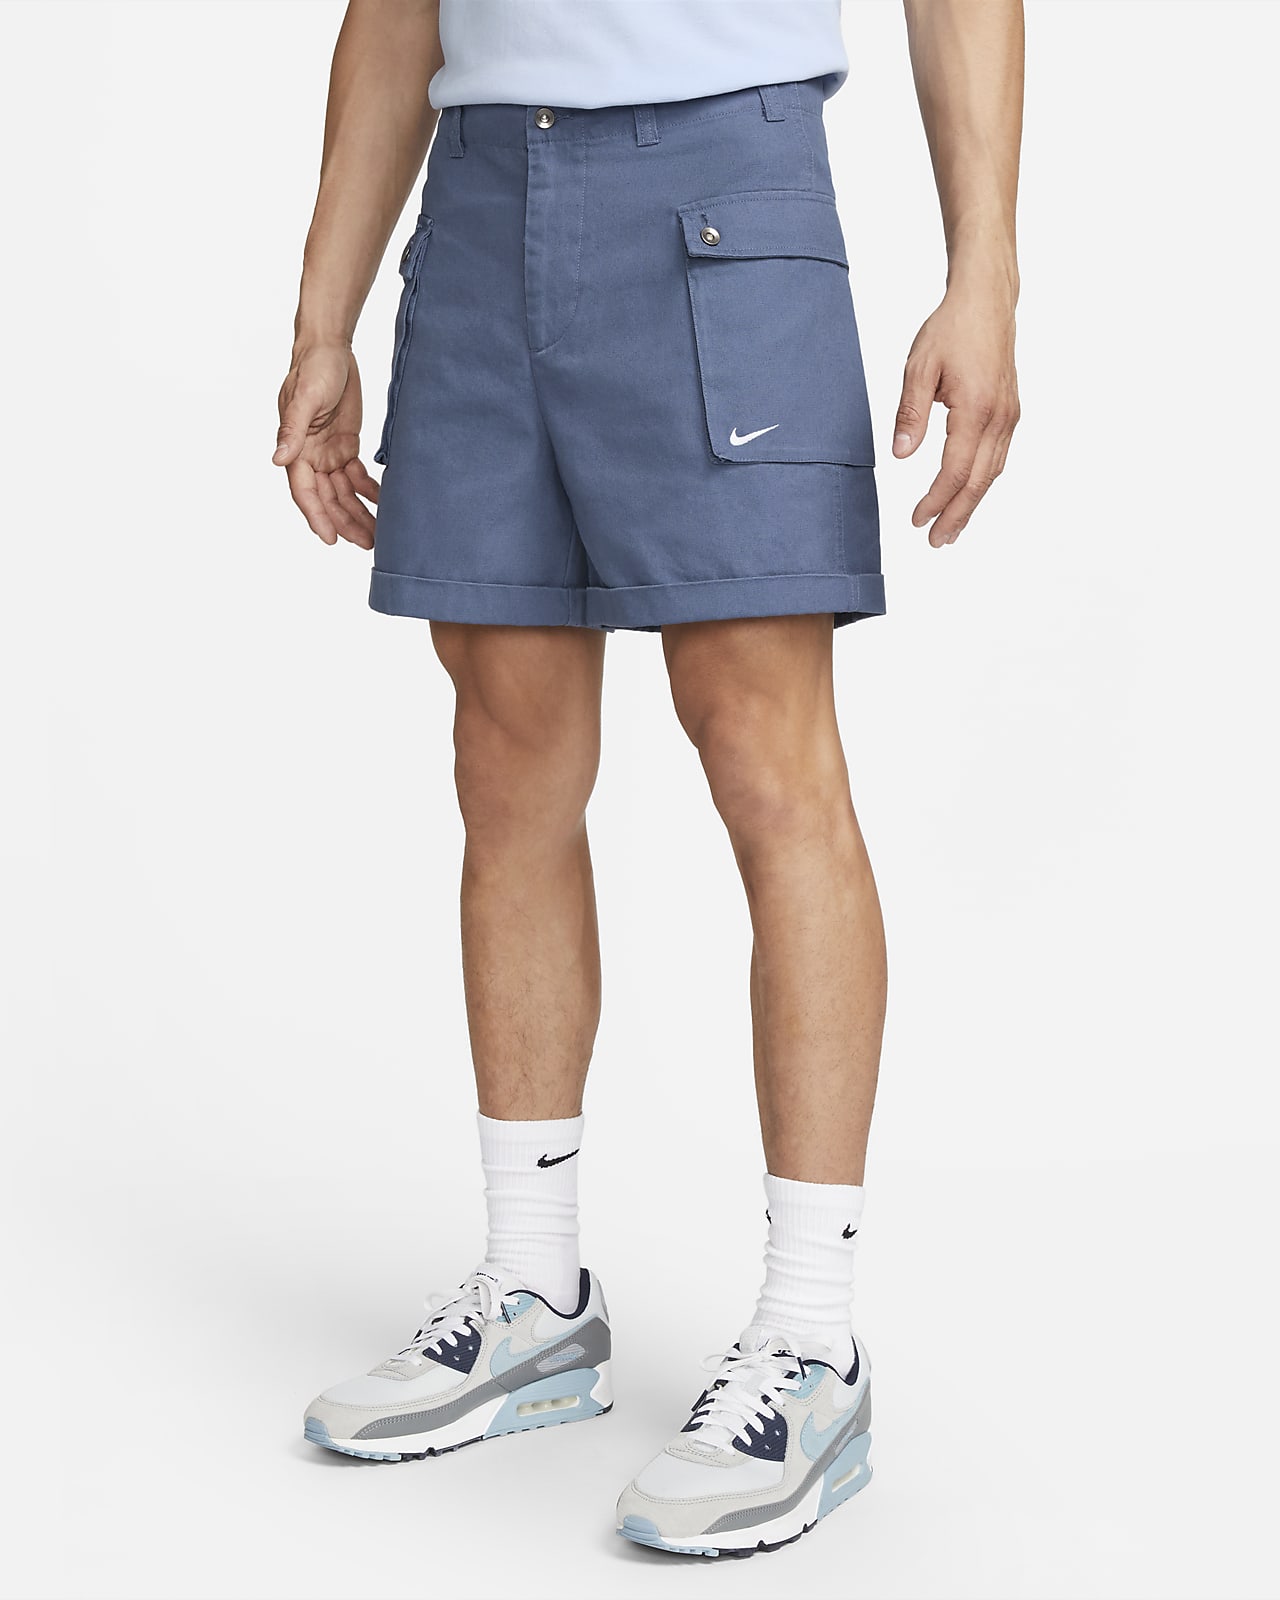 Nike Life Men's Woven P44 Cargo Shorts. 